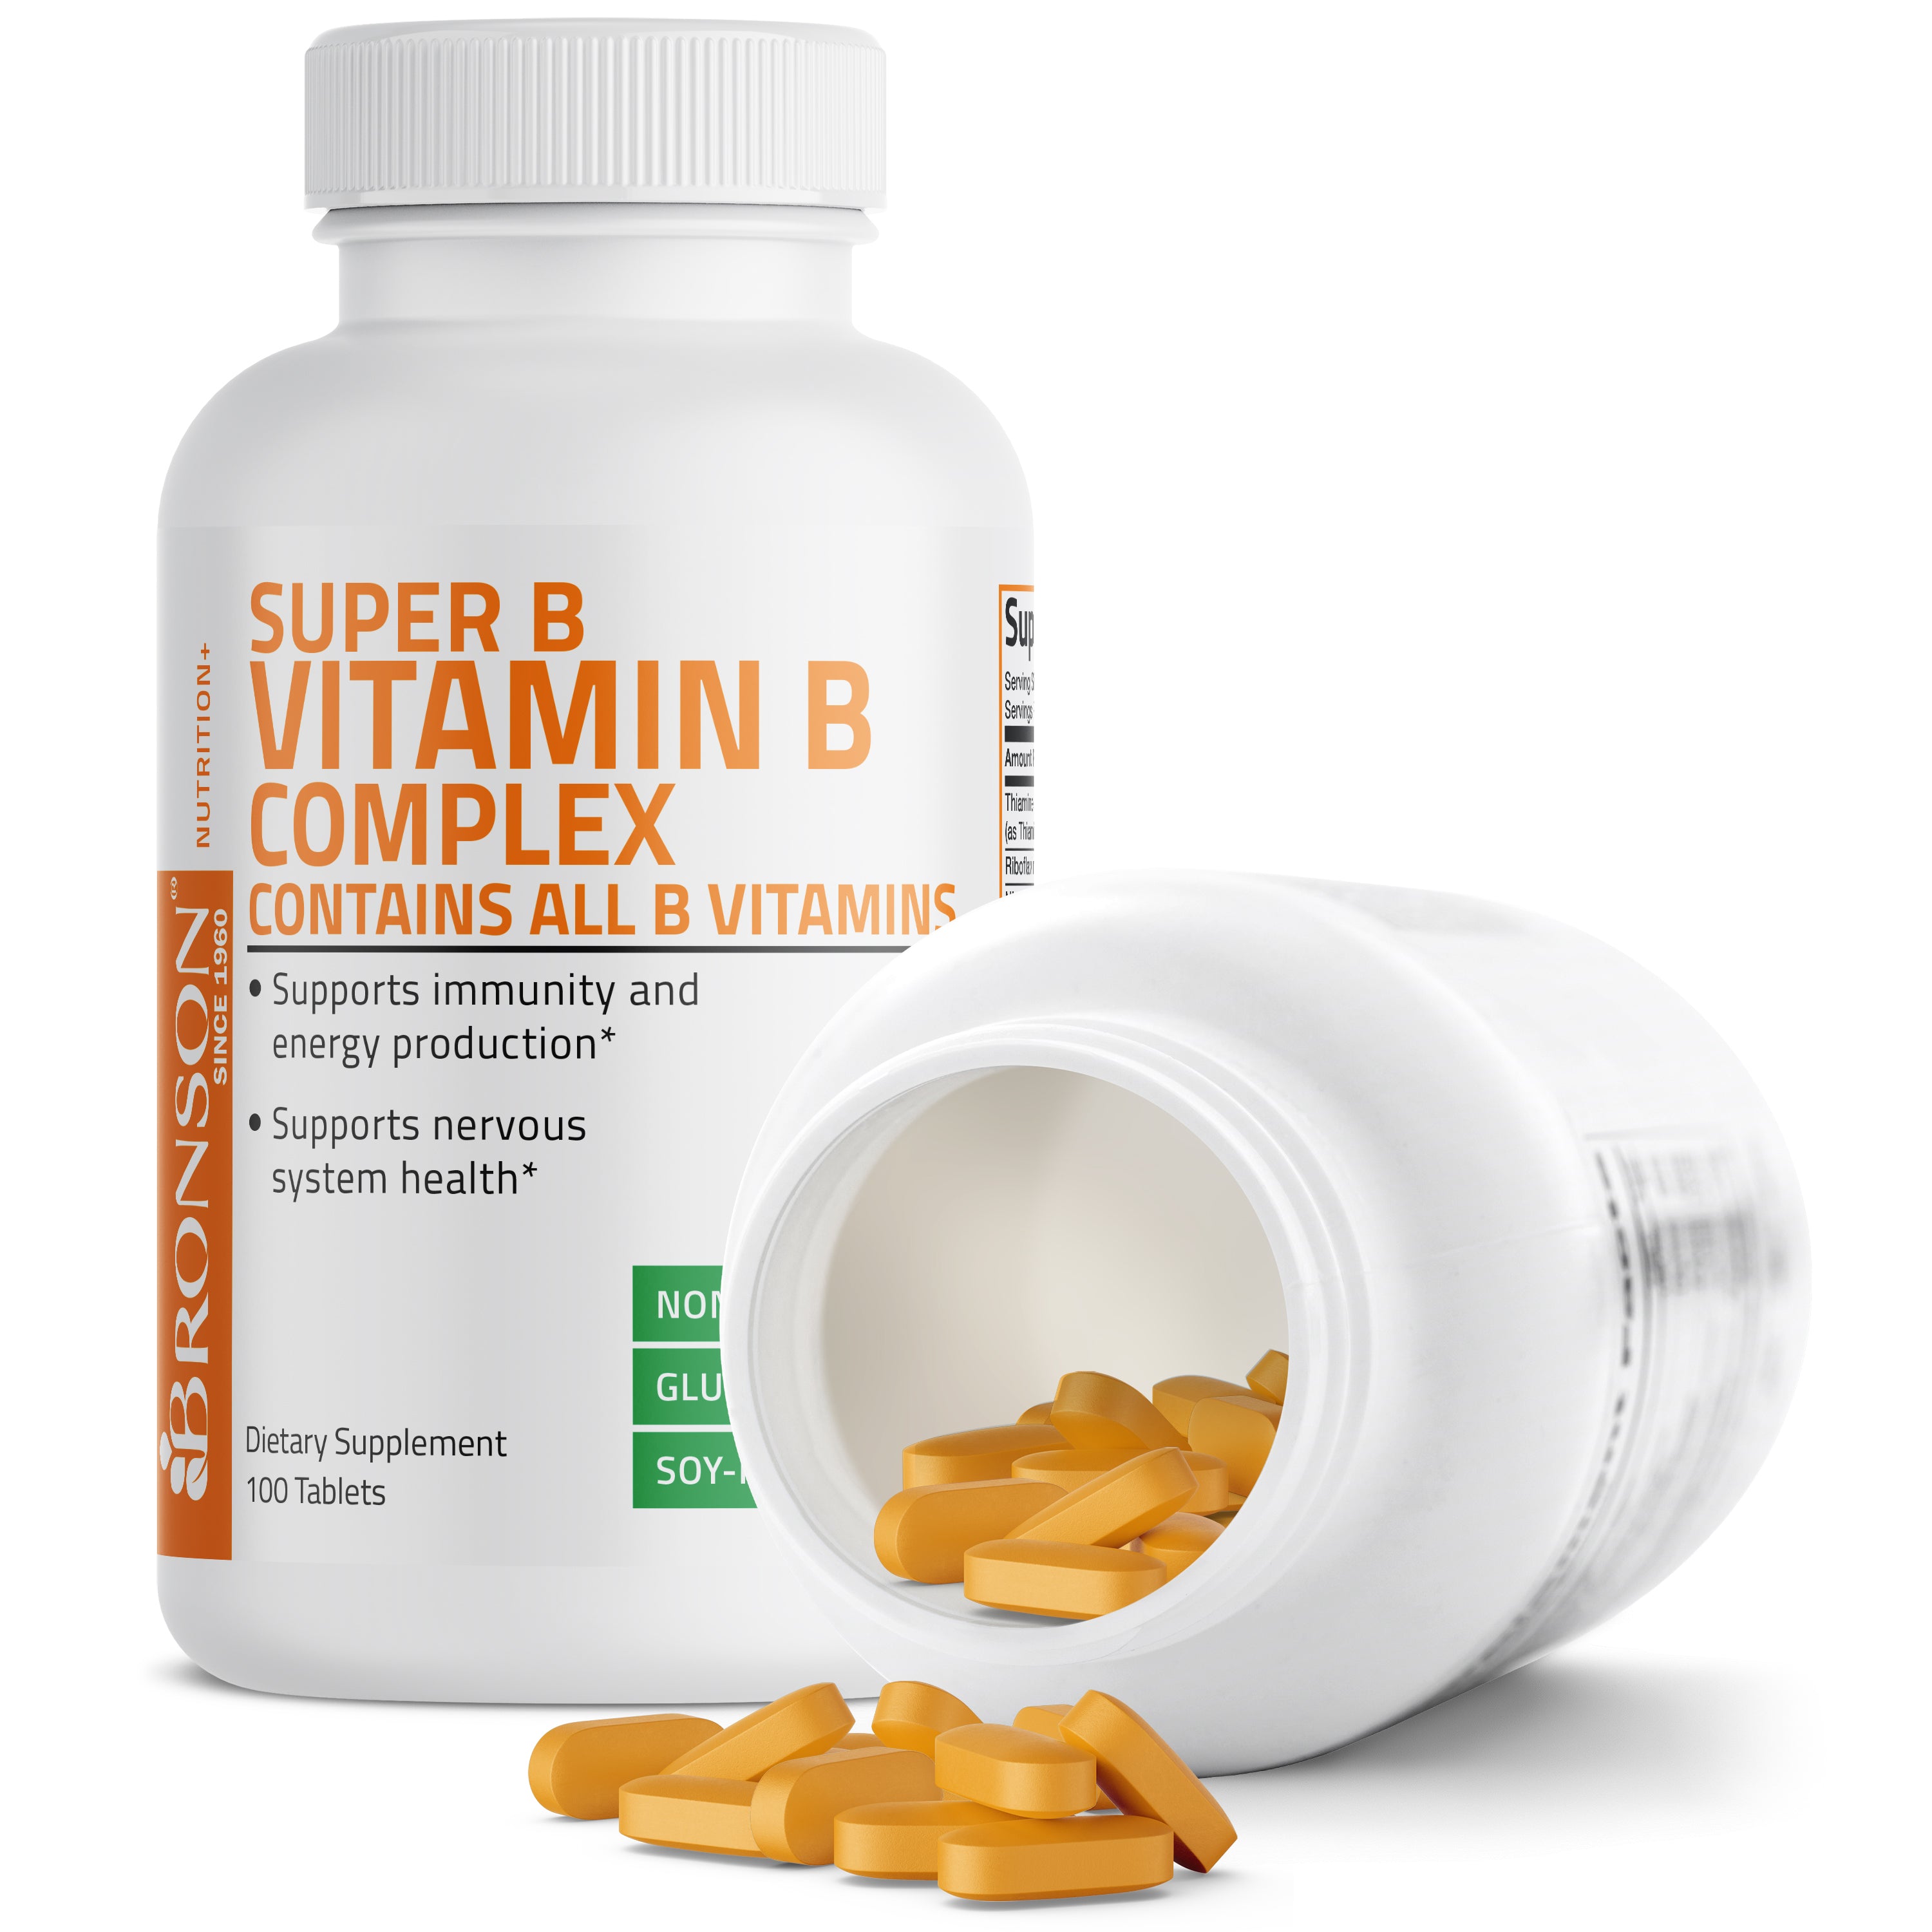 Super Vitamin B Complex view 4 of 4